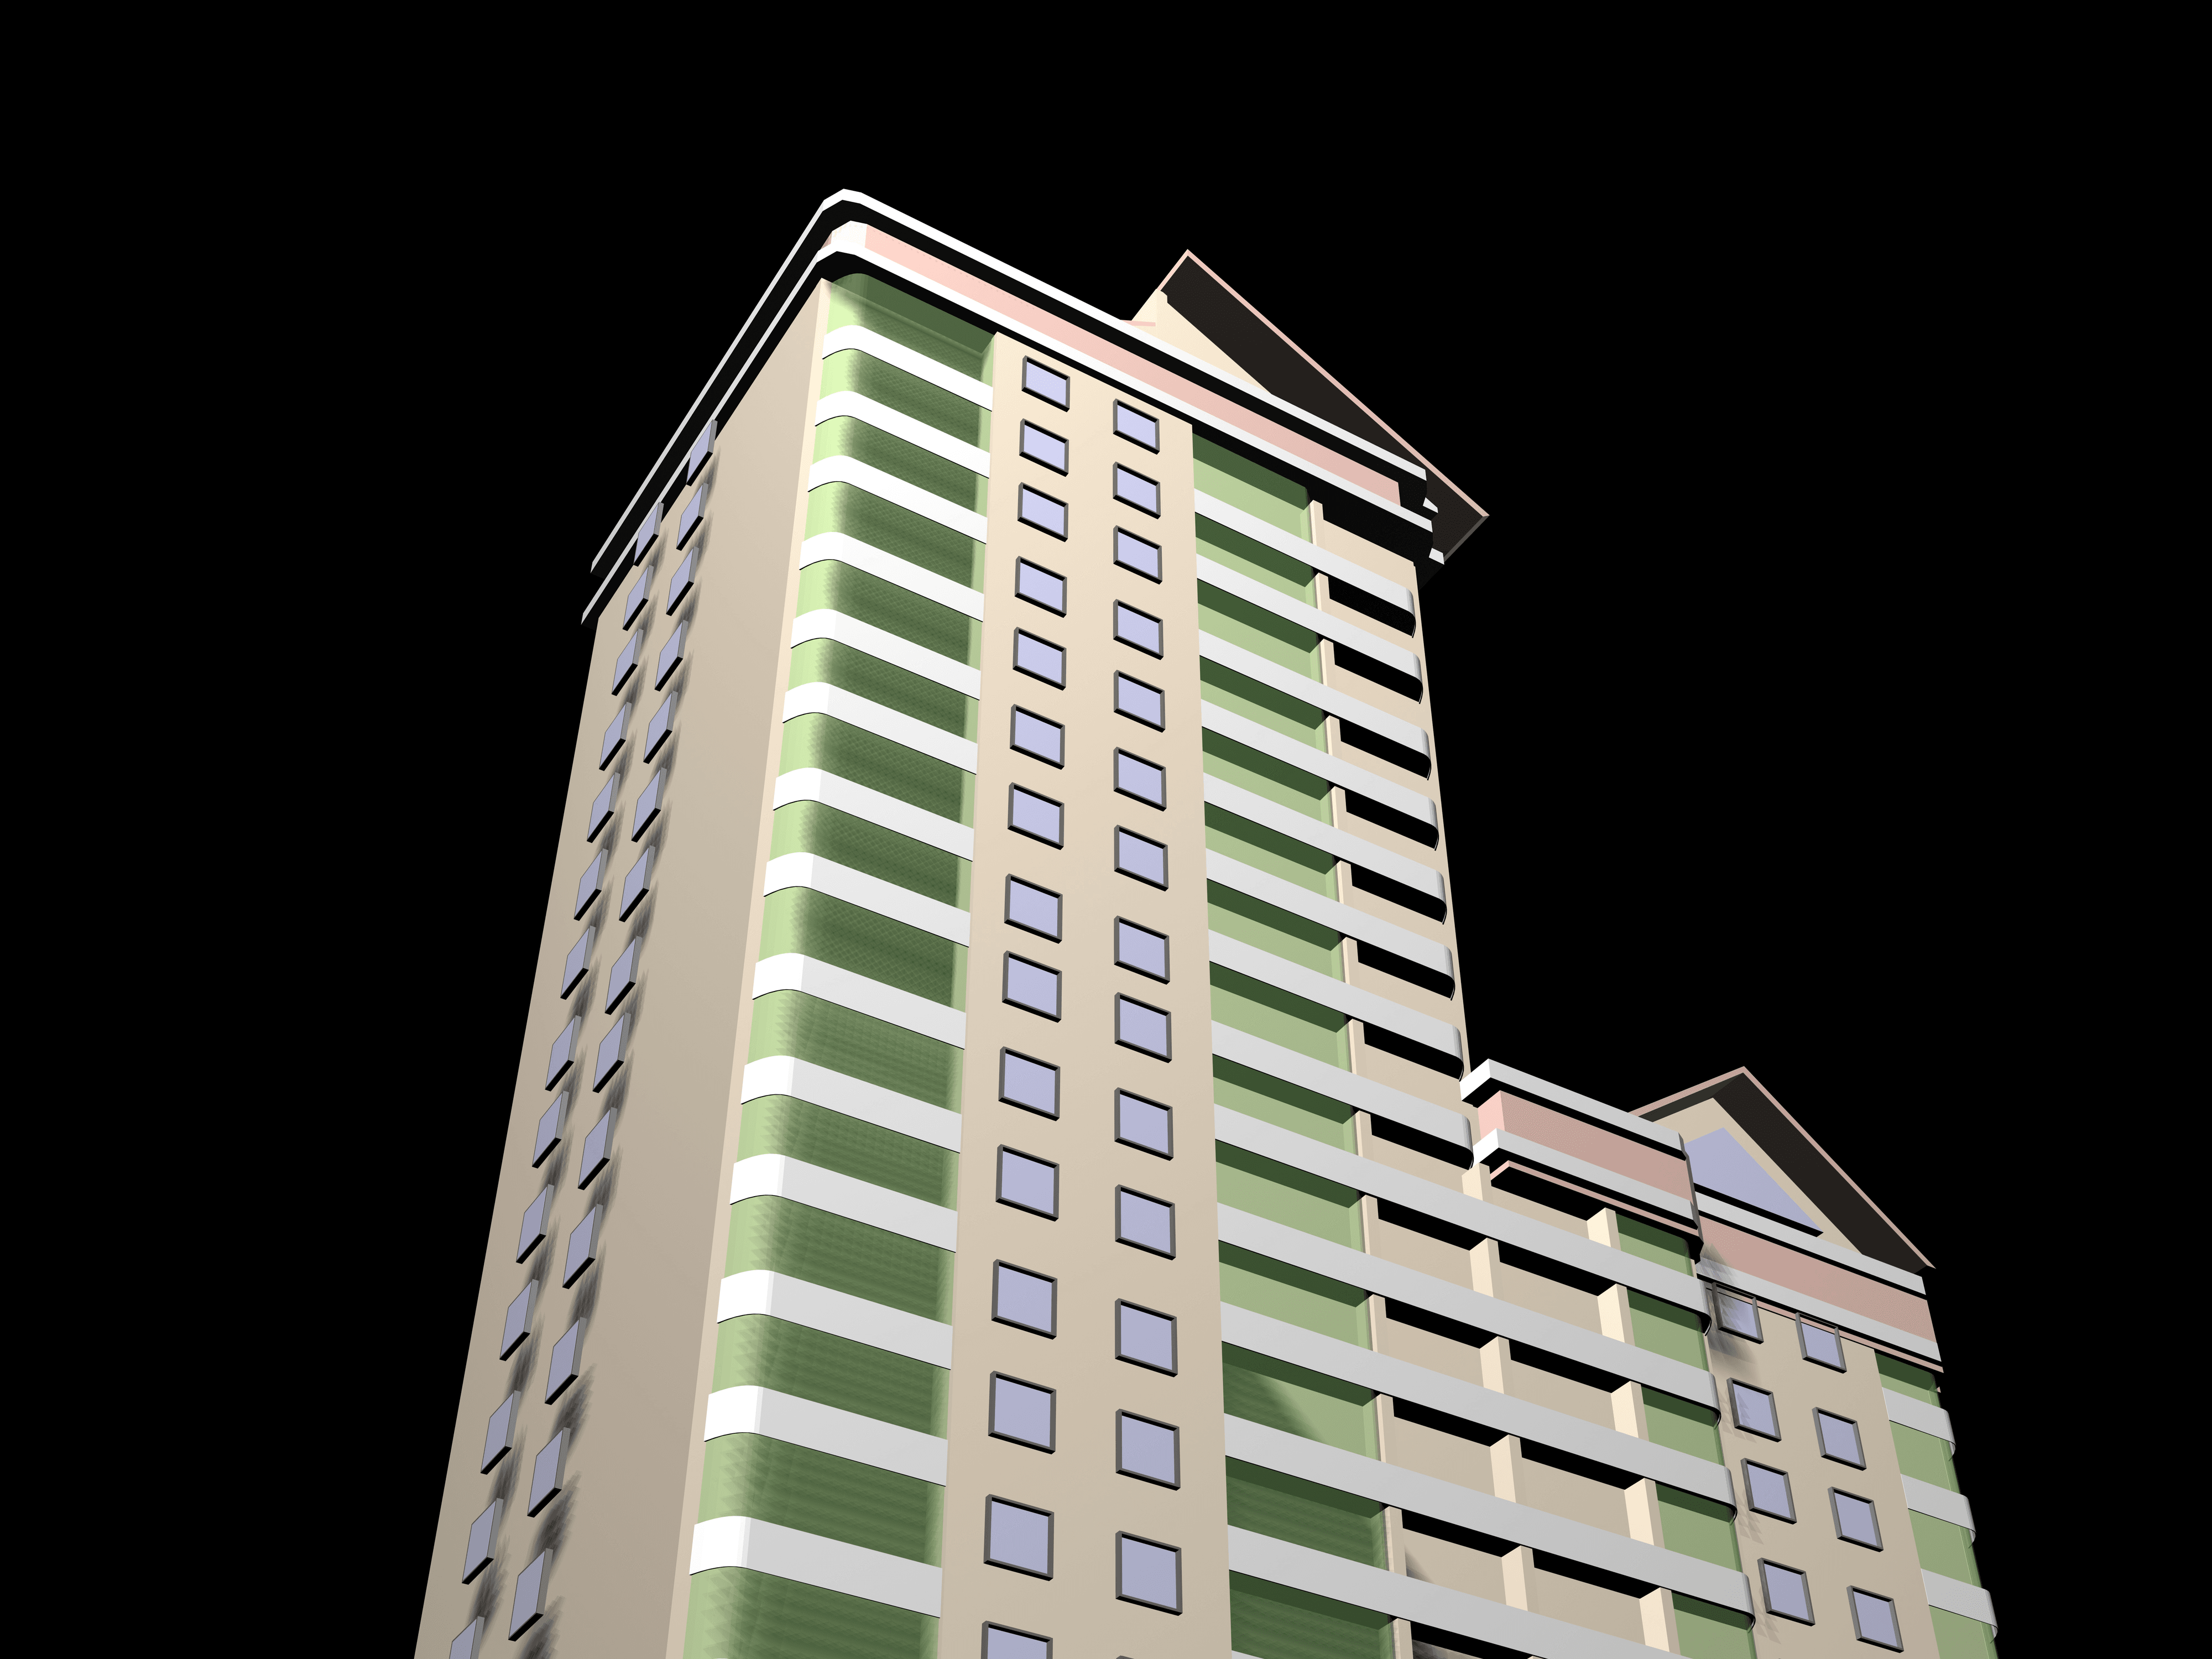 Architecture project 3d model vizualization building